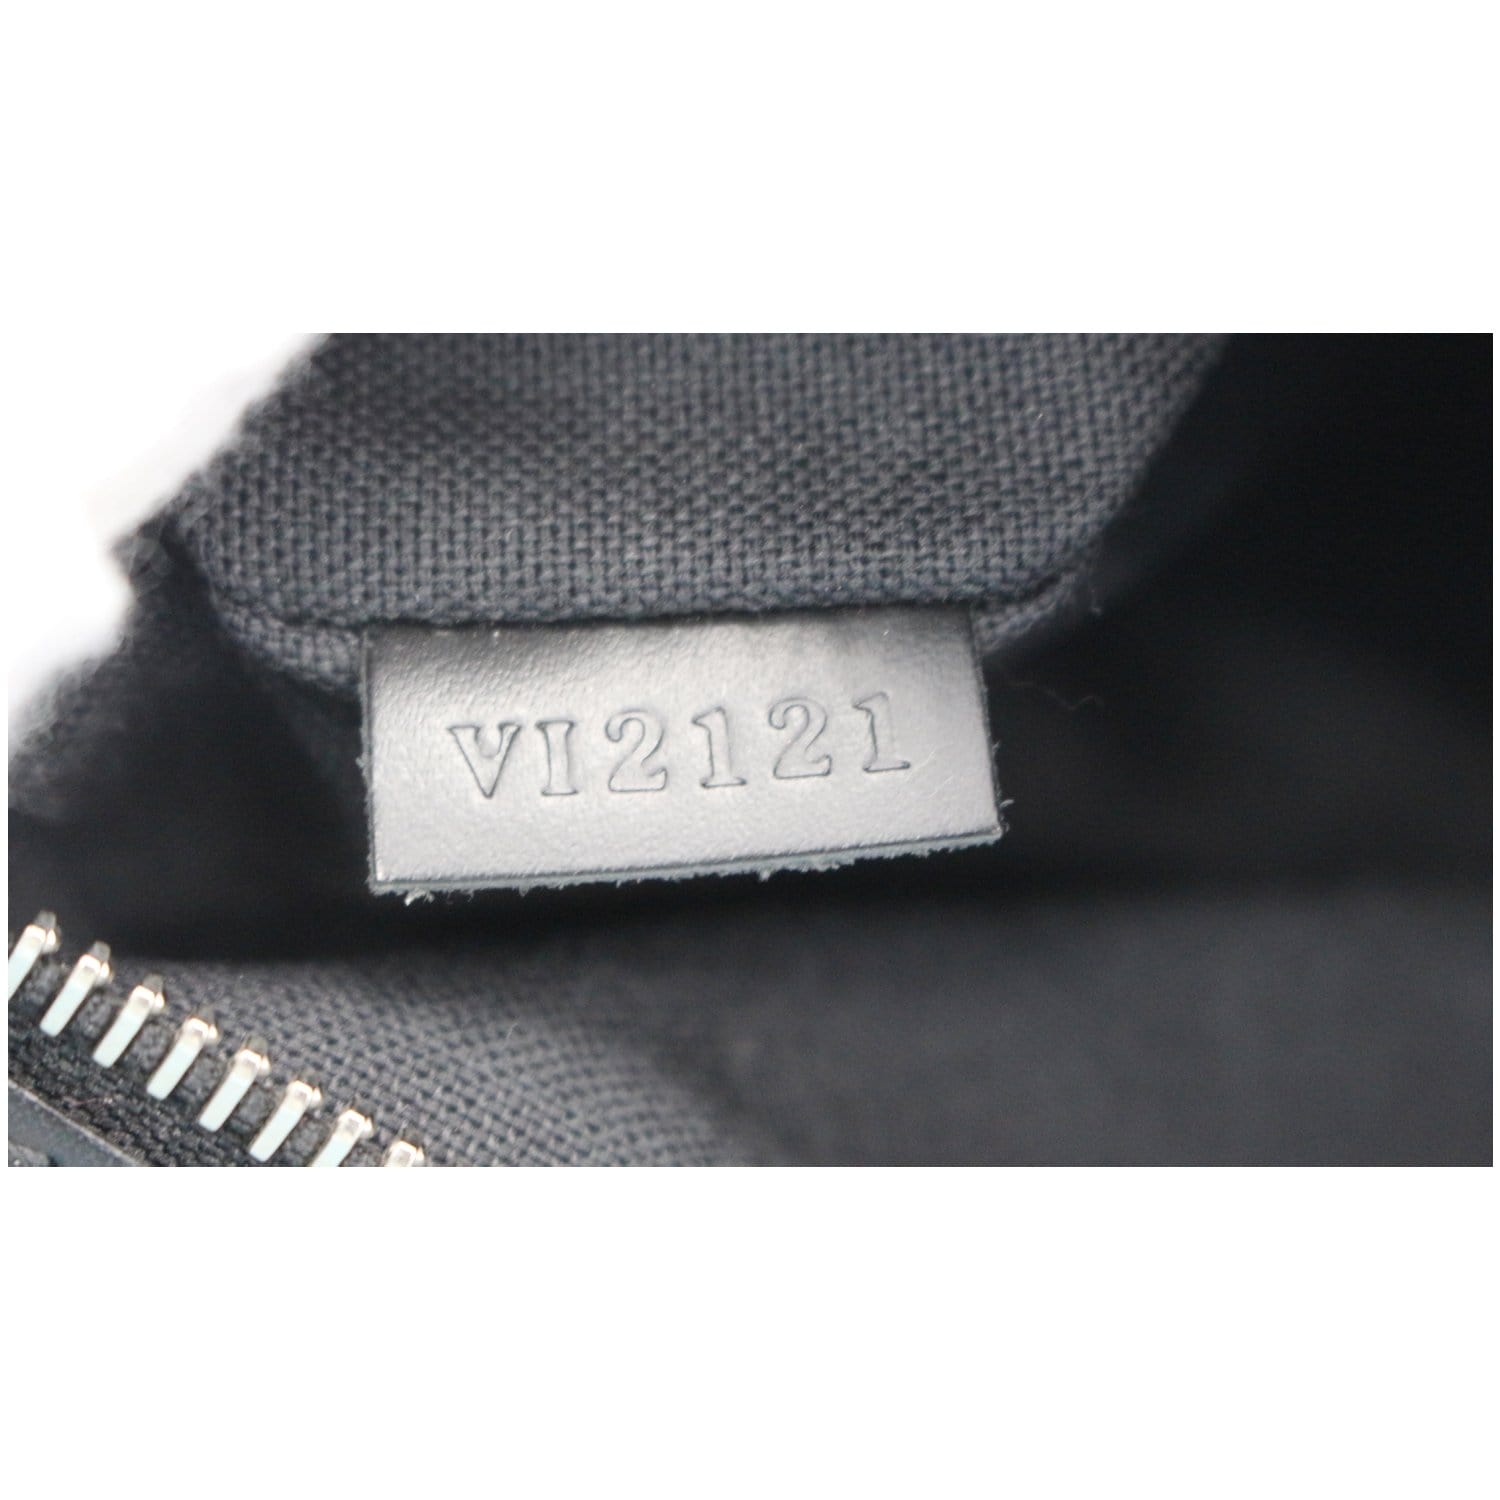 Louis+Vuitton+Thomas+Shoulder+Bag+Black+Canvas for sale online